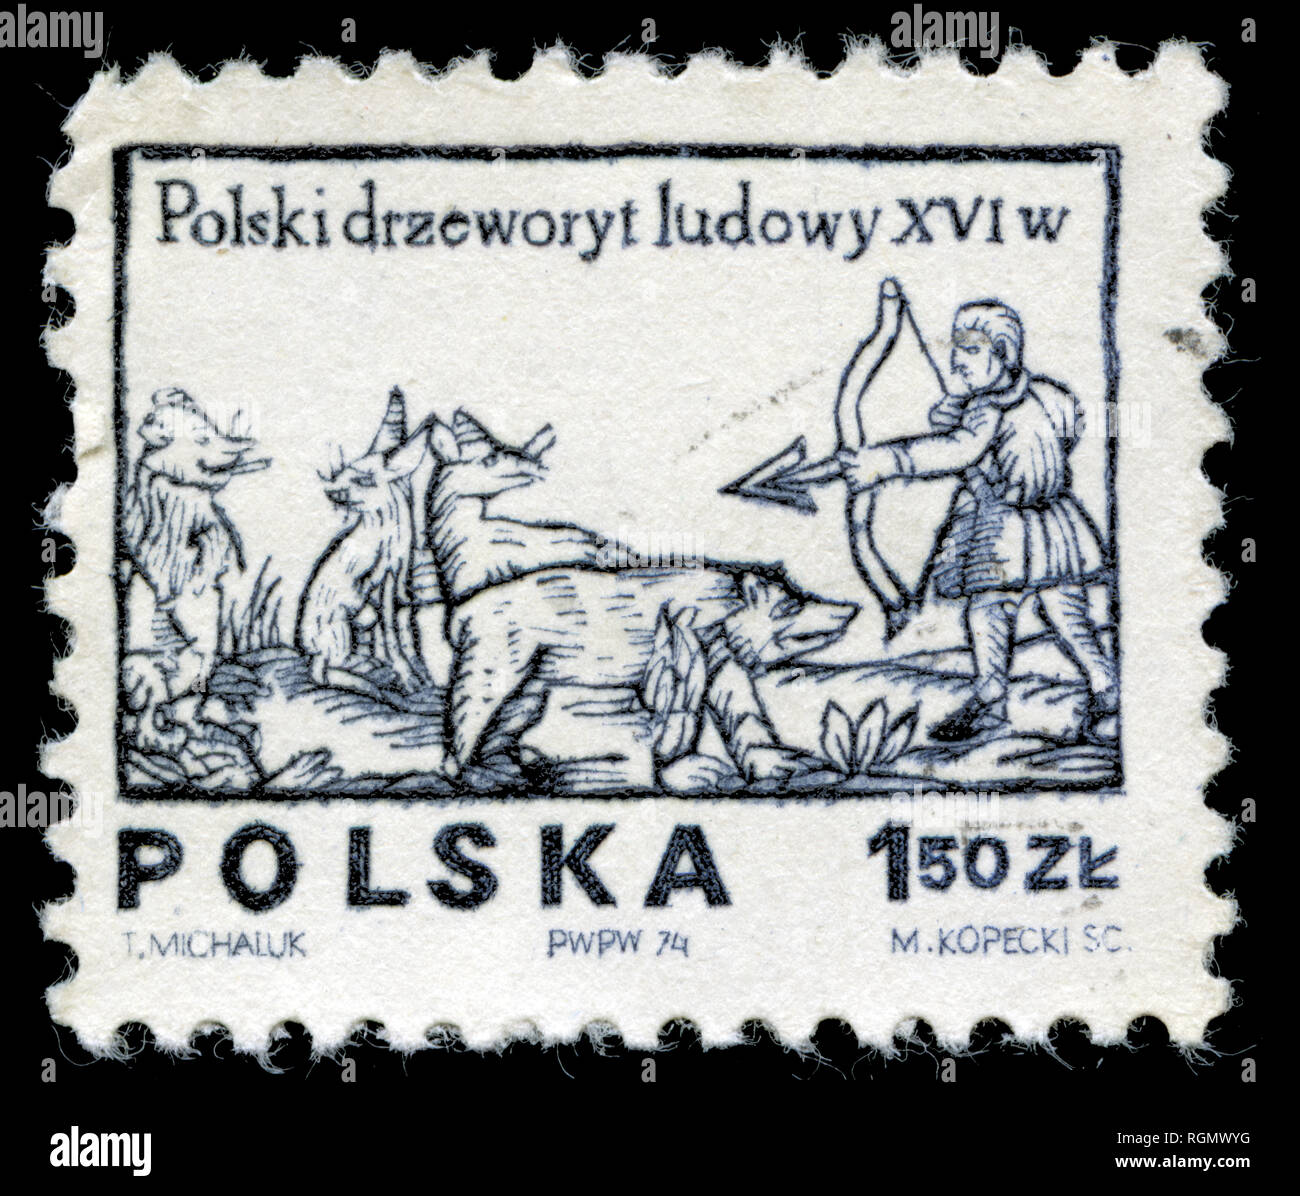 Timbre-poste de la Pologne dans les dessins du 16e siècle bois gravés série émise en 1974 Banque D'Images